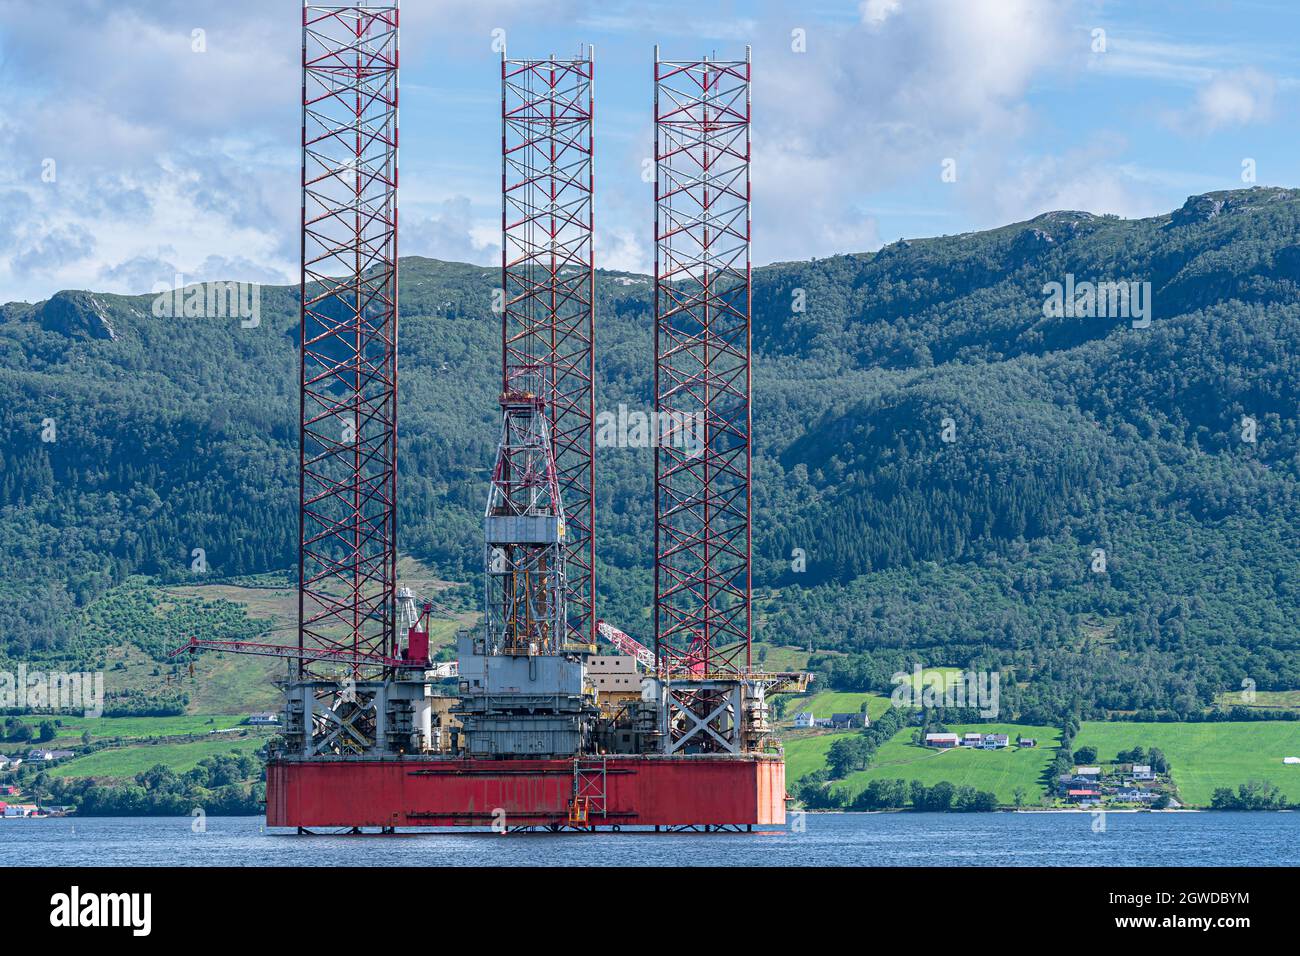 OELEN, NORVEGIA - 2020 LUGLIO 09. Oilplatform all'interno del fiordo norvegese per la manutenzione presso il cantiere navale. Foto Stock